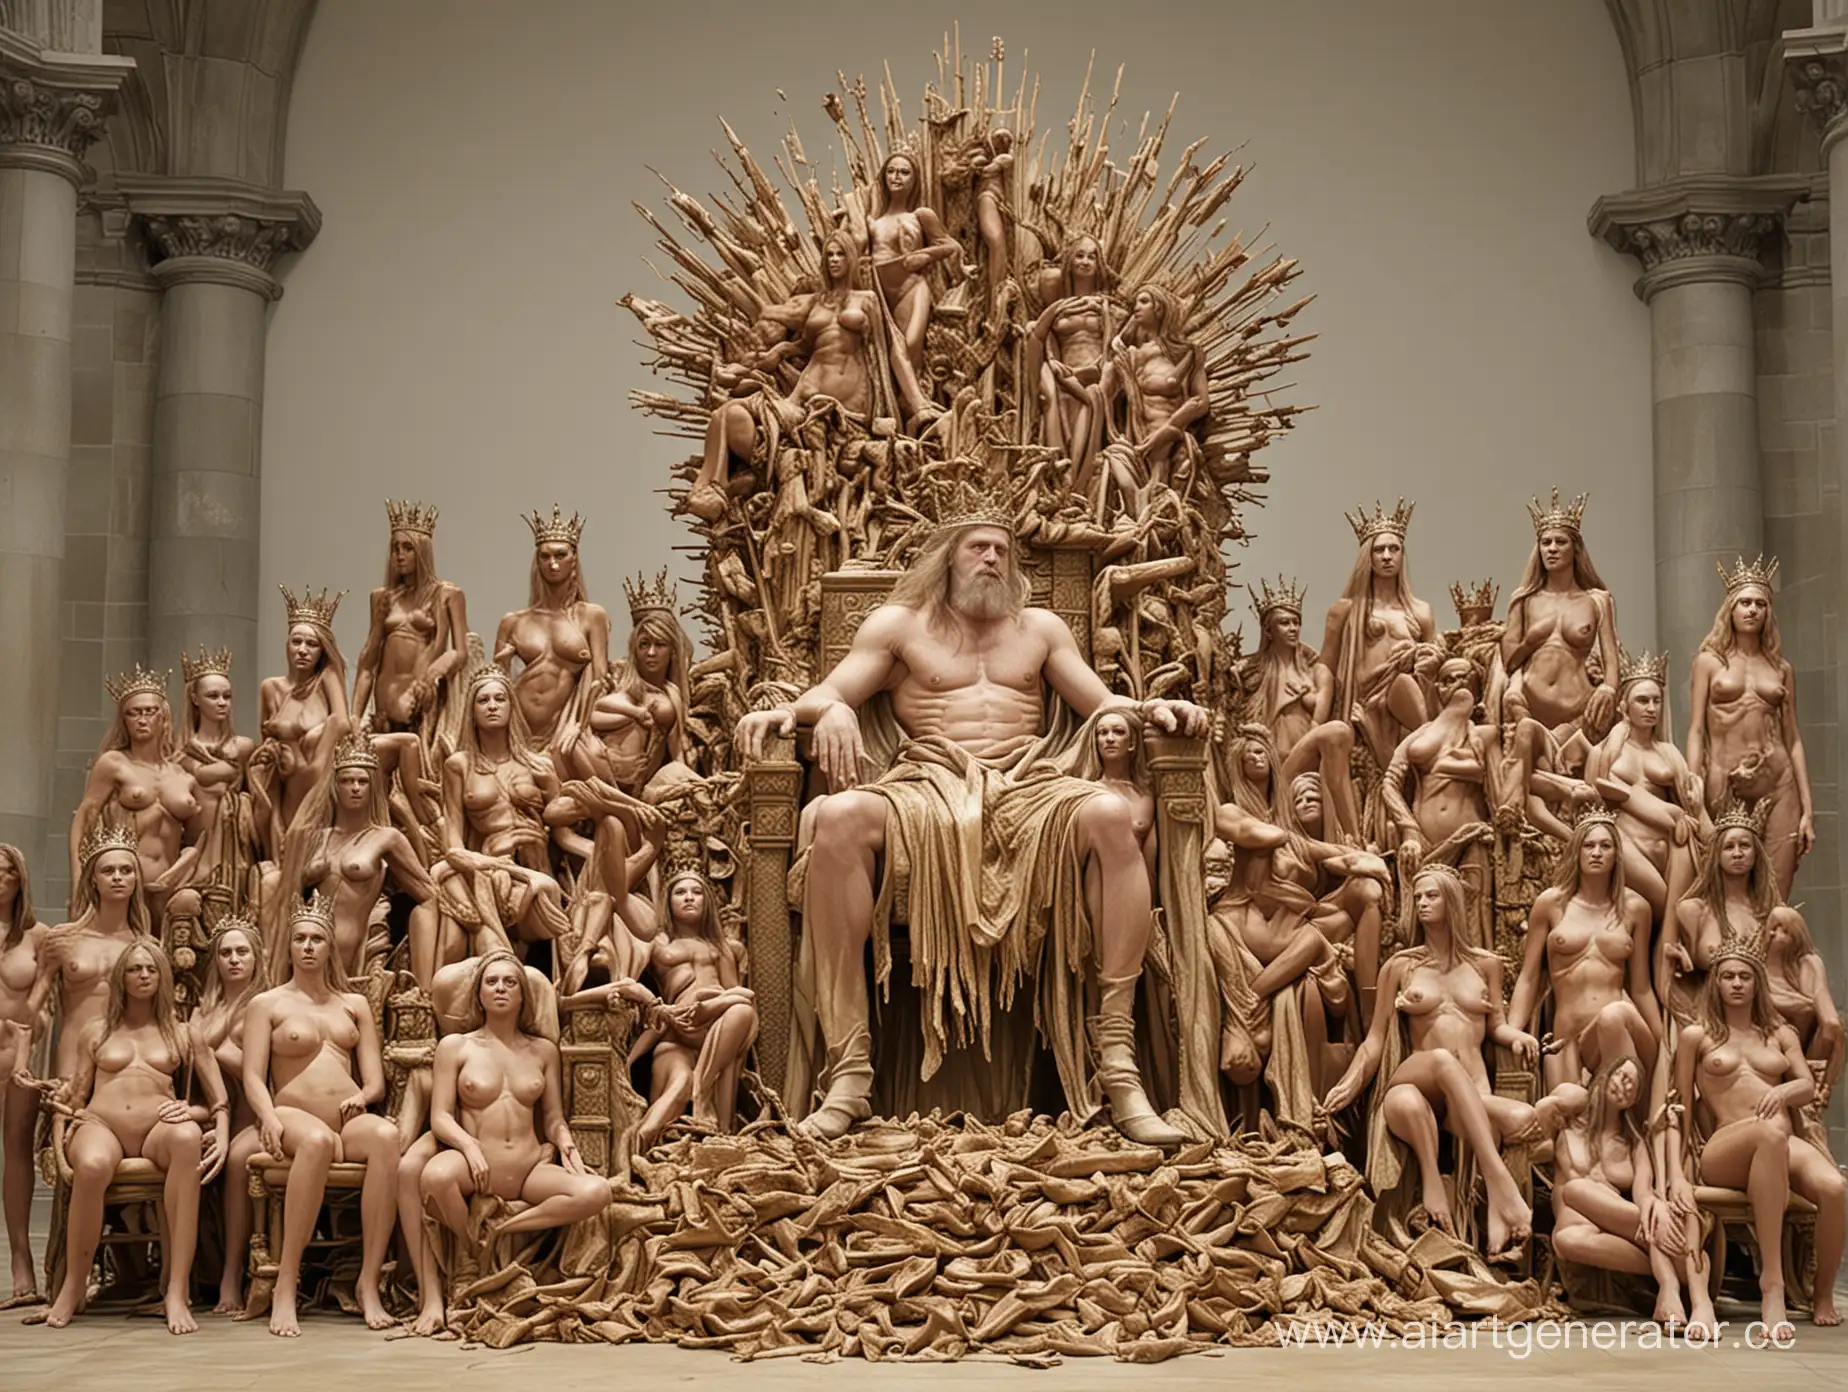 королевский трон  собранный из  обнаженных женских промежностей близко